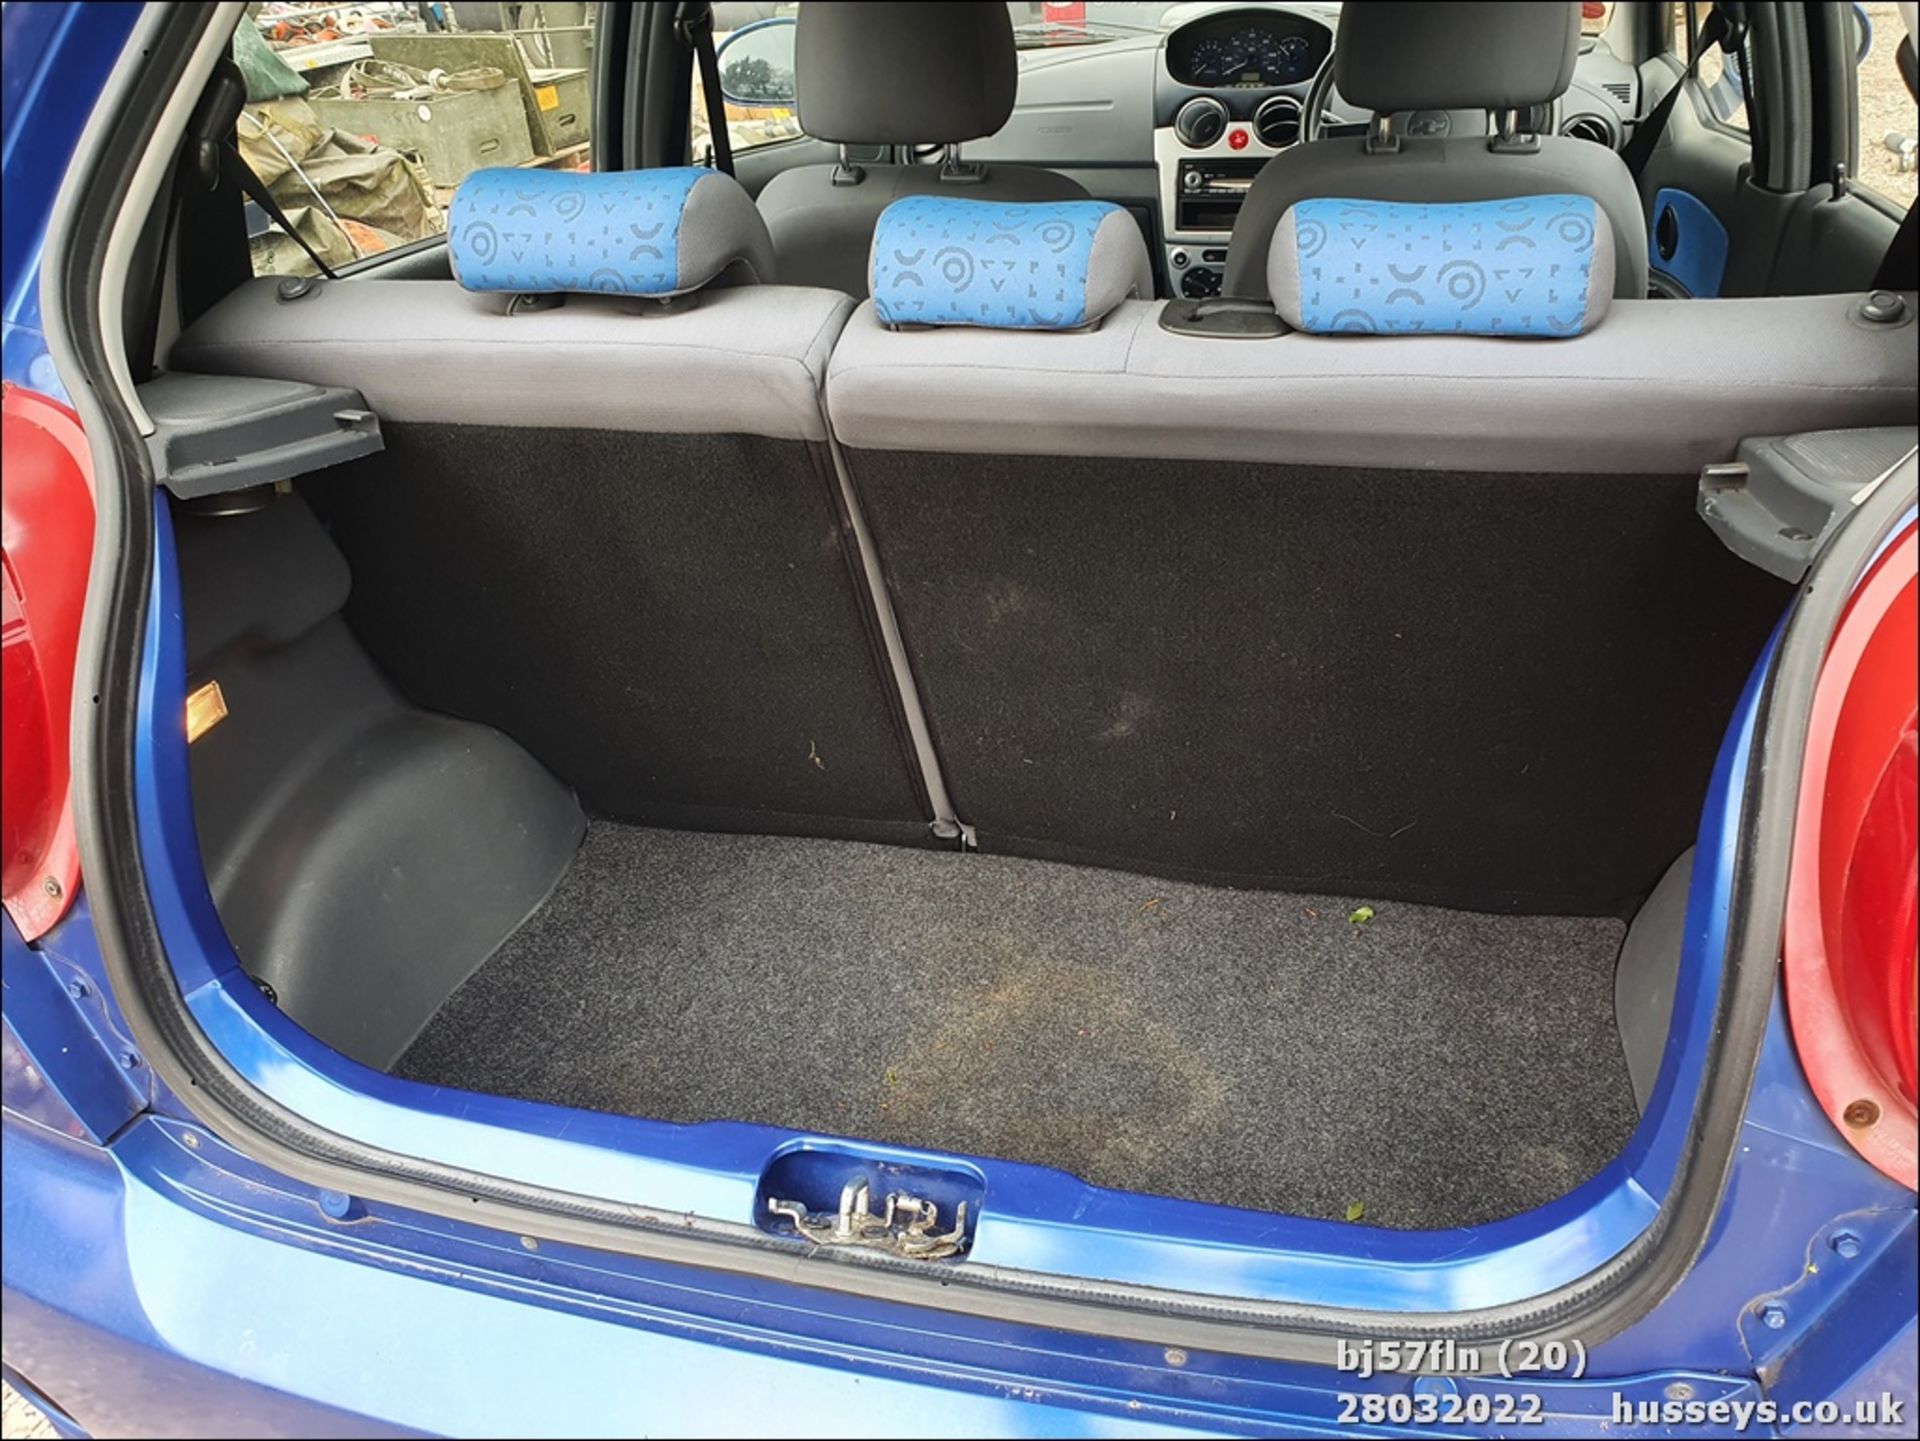 07/57 CHEVROLET MATIZ SE - 995cc 5dr Hatchback (Blue, 70k) - Image 20 of 24